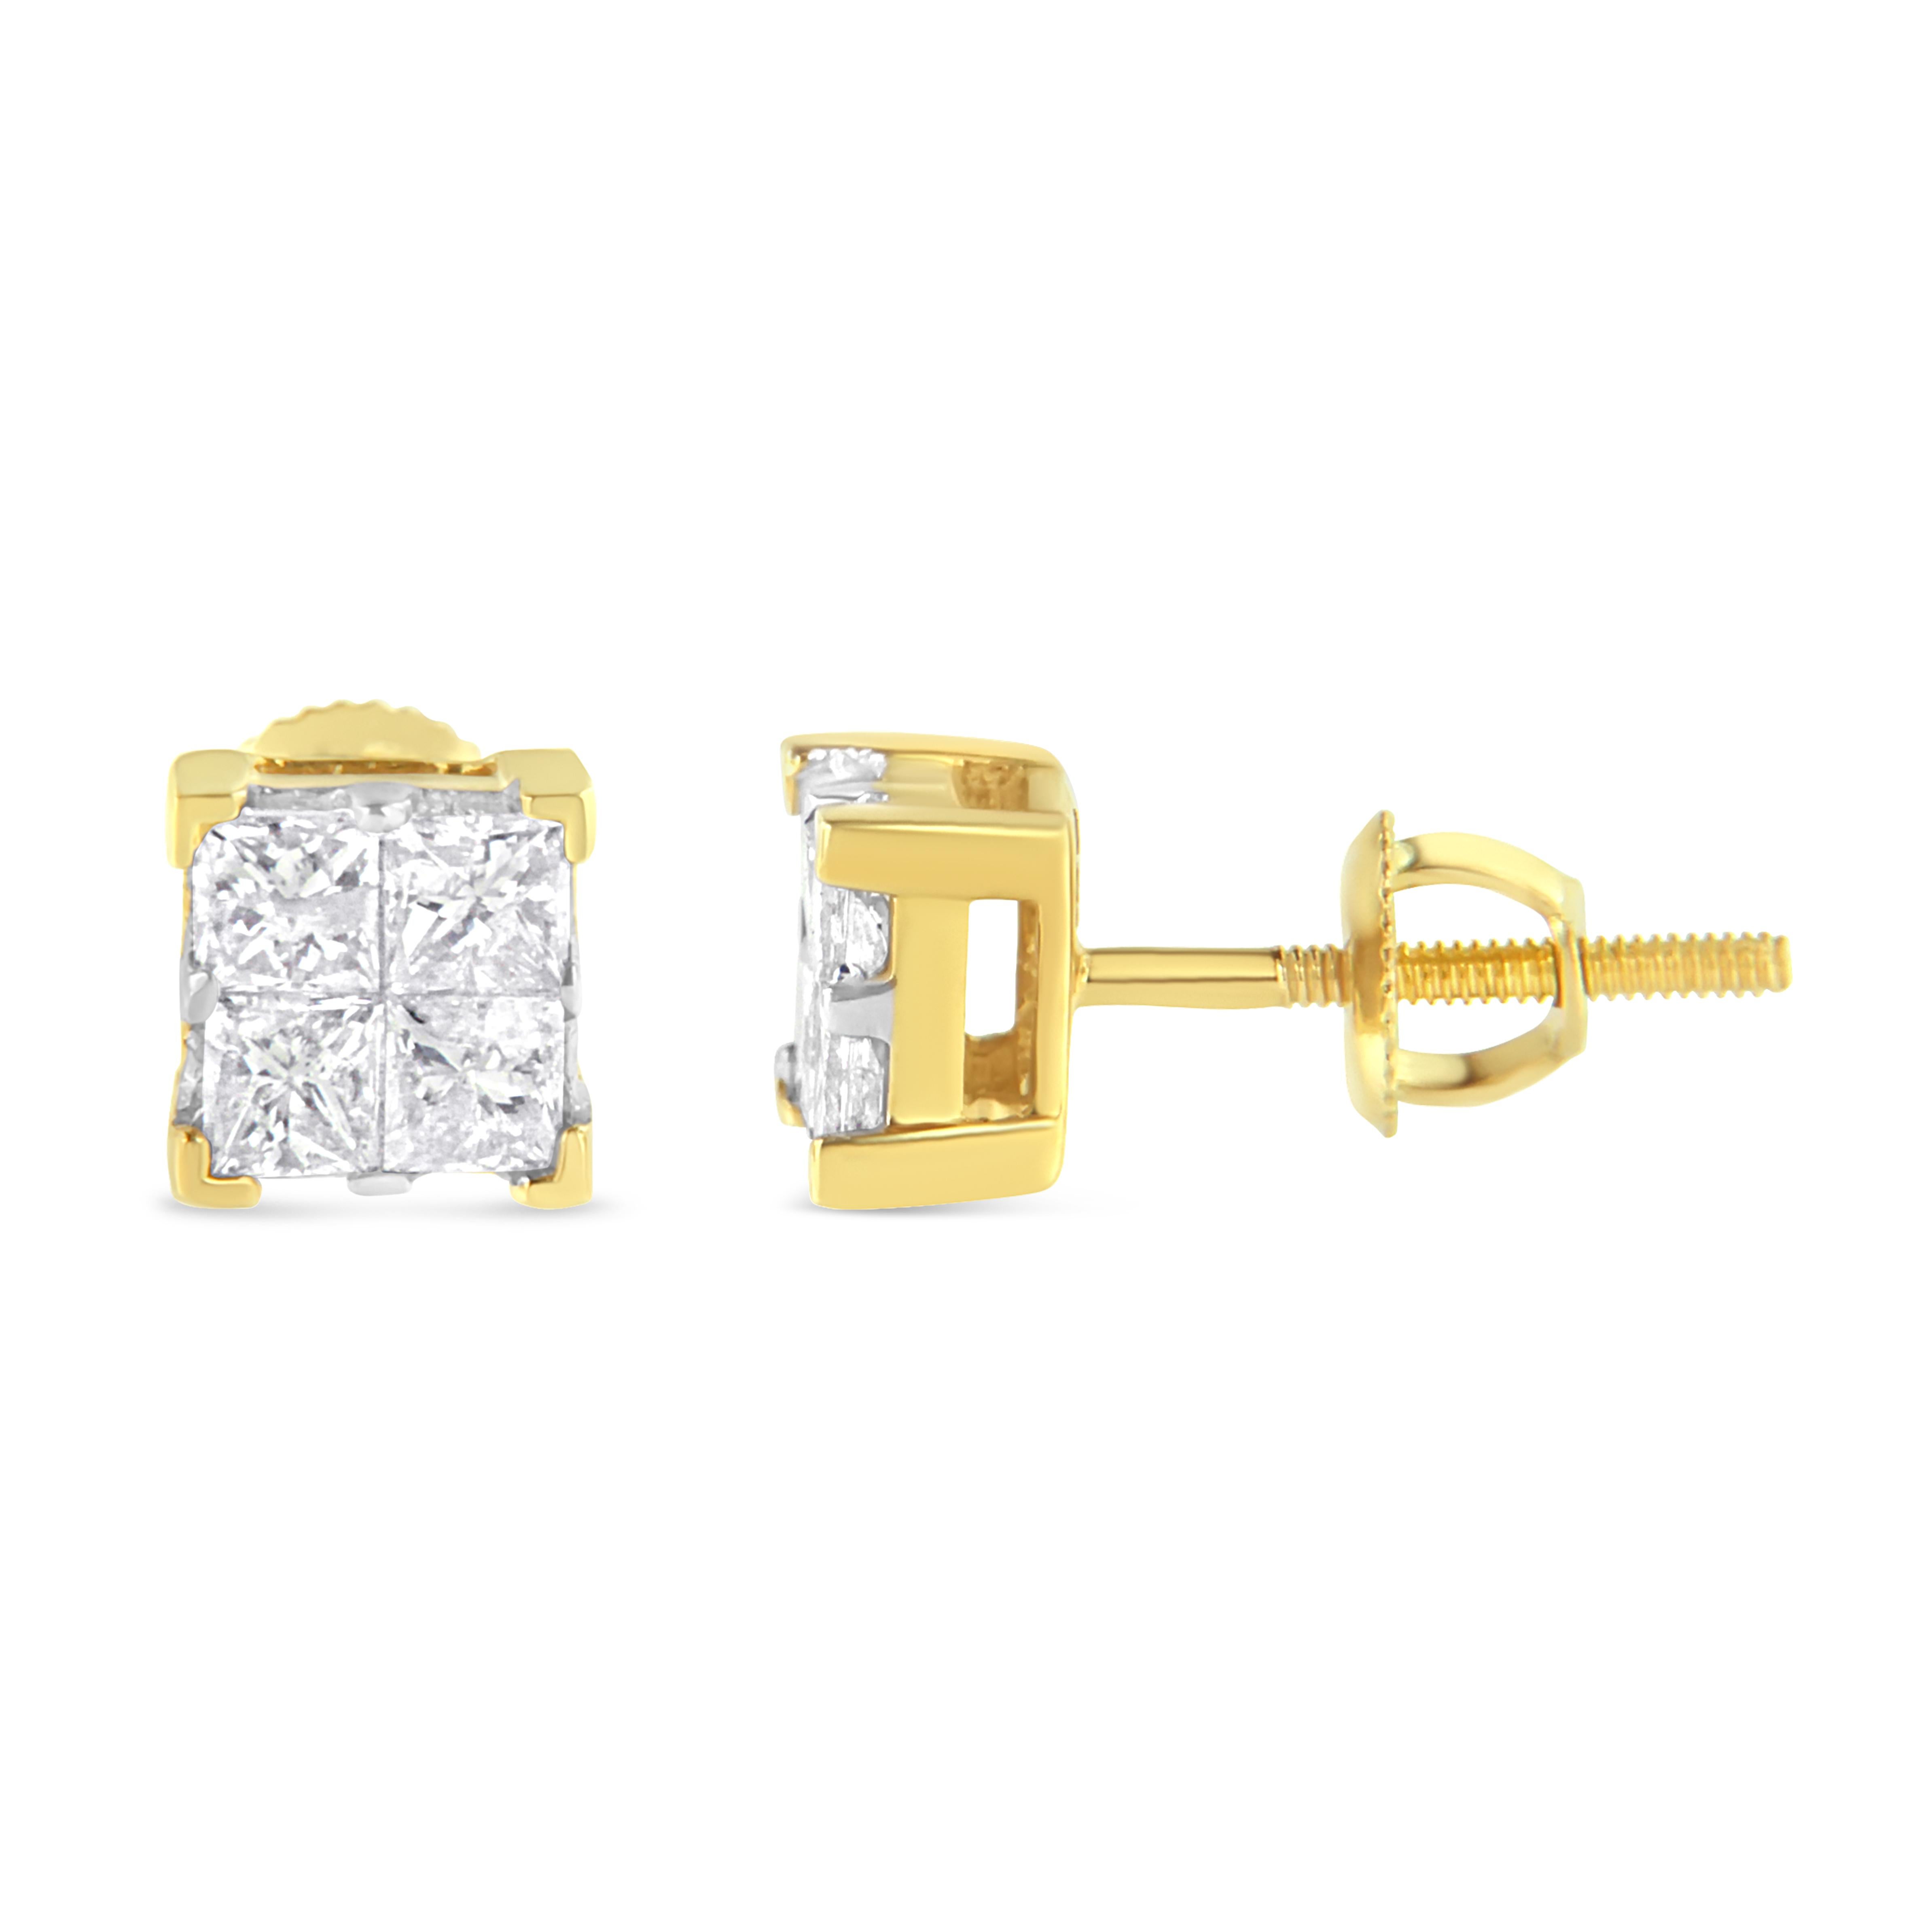 Setzen Sie die Liebe in Szene mit diesen funkelnden Diamant-Ohrsteckern. Jeder Ohrring ist aus warmem 10-karätigem Gelbgold gefertigt und besteht aus einem quadratischen Verbund von 4 funkelnden Diamanten im Prinzessschliff. Diese Ohrstecker